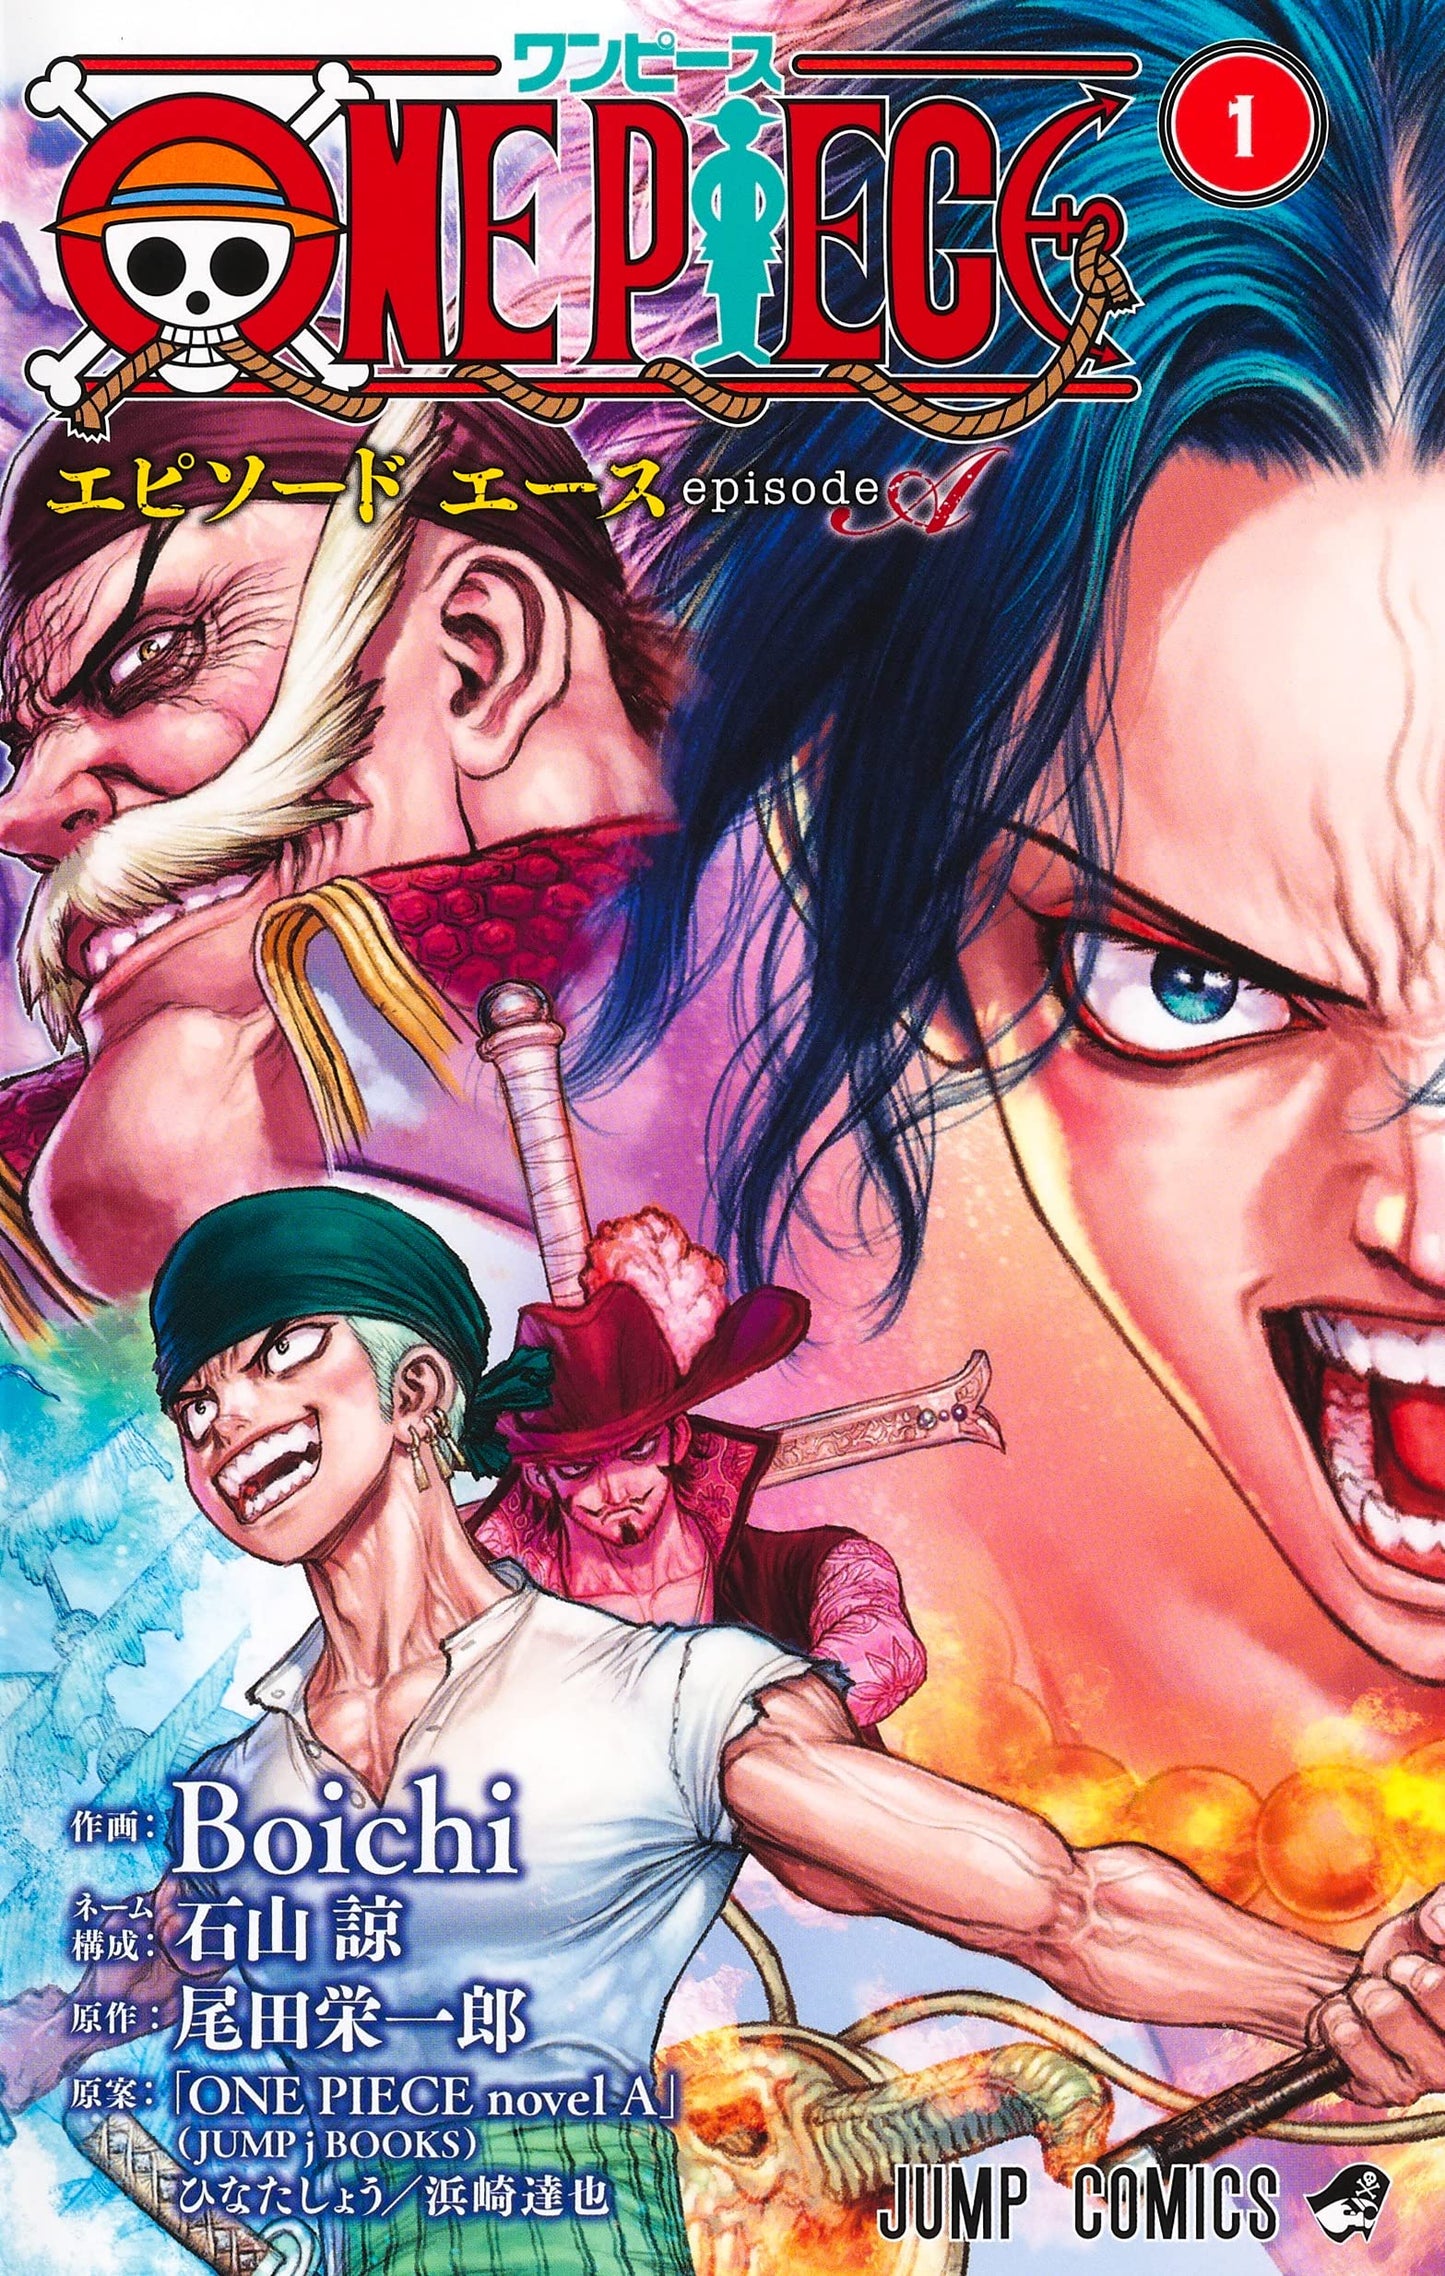 One Piece - Boichi episode A1